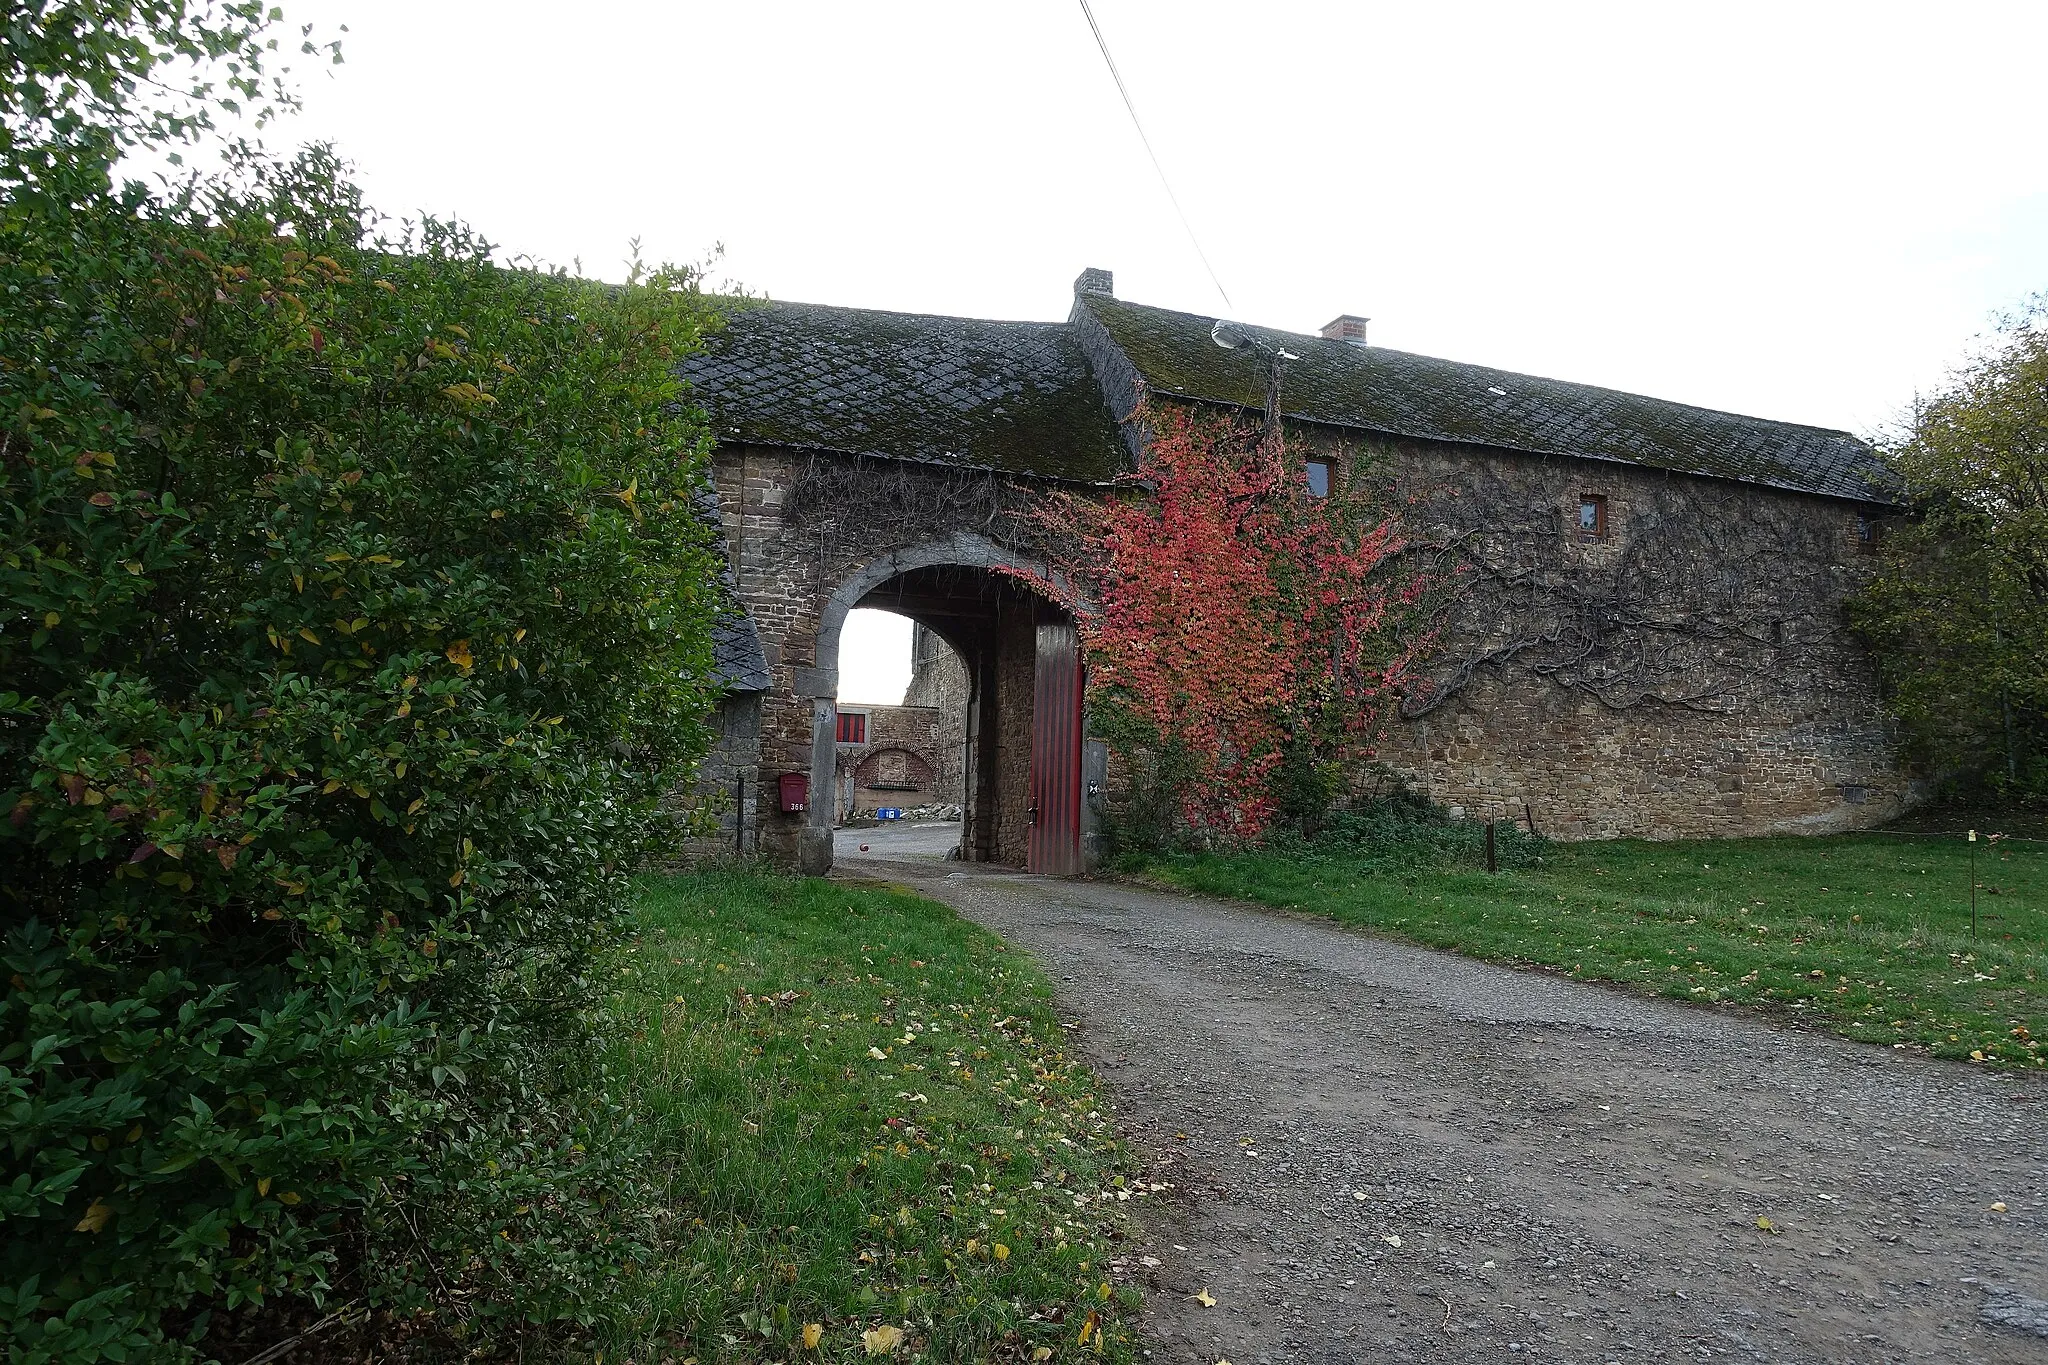 Photo showing: Ferme de Houssoy in Vézin (Andenne) is een vierkantshoeve uit de 17de eeuw gebouwd rond een donjon uit 14de eeuw in Vezin (Andenne).
Beschermd monument